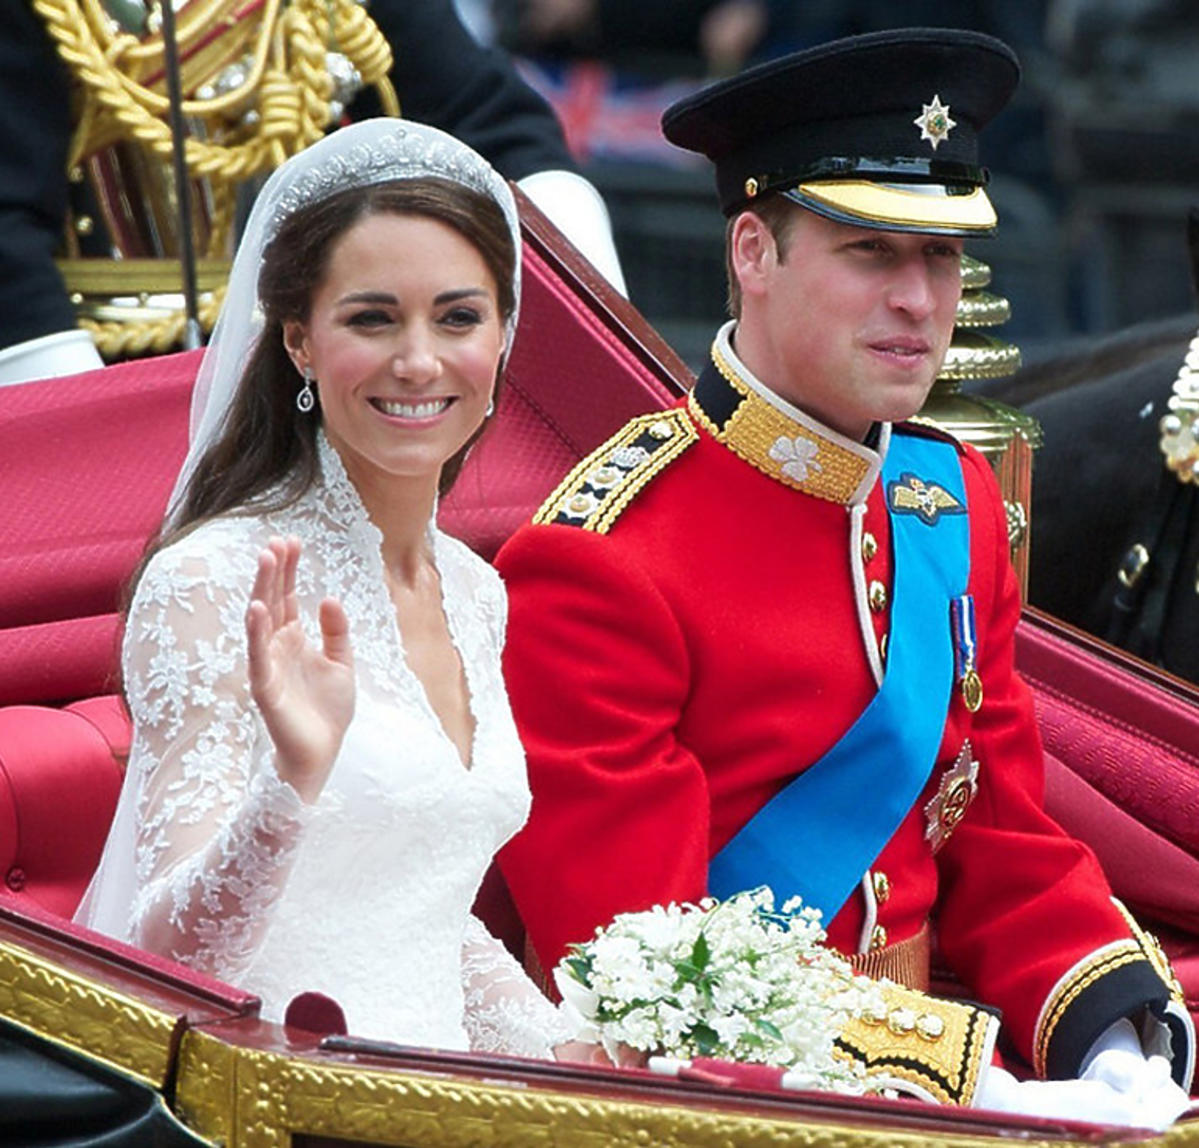 Książę William i księżna Kate ślub 29 kwietnia 2011 roku w Londynie